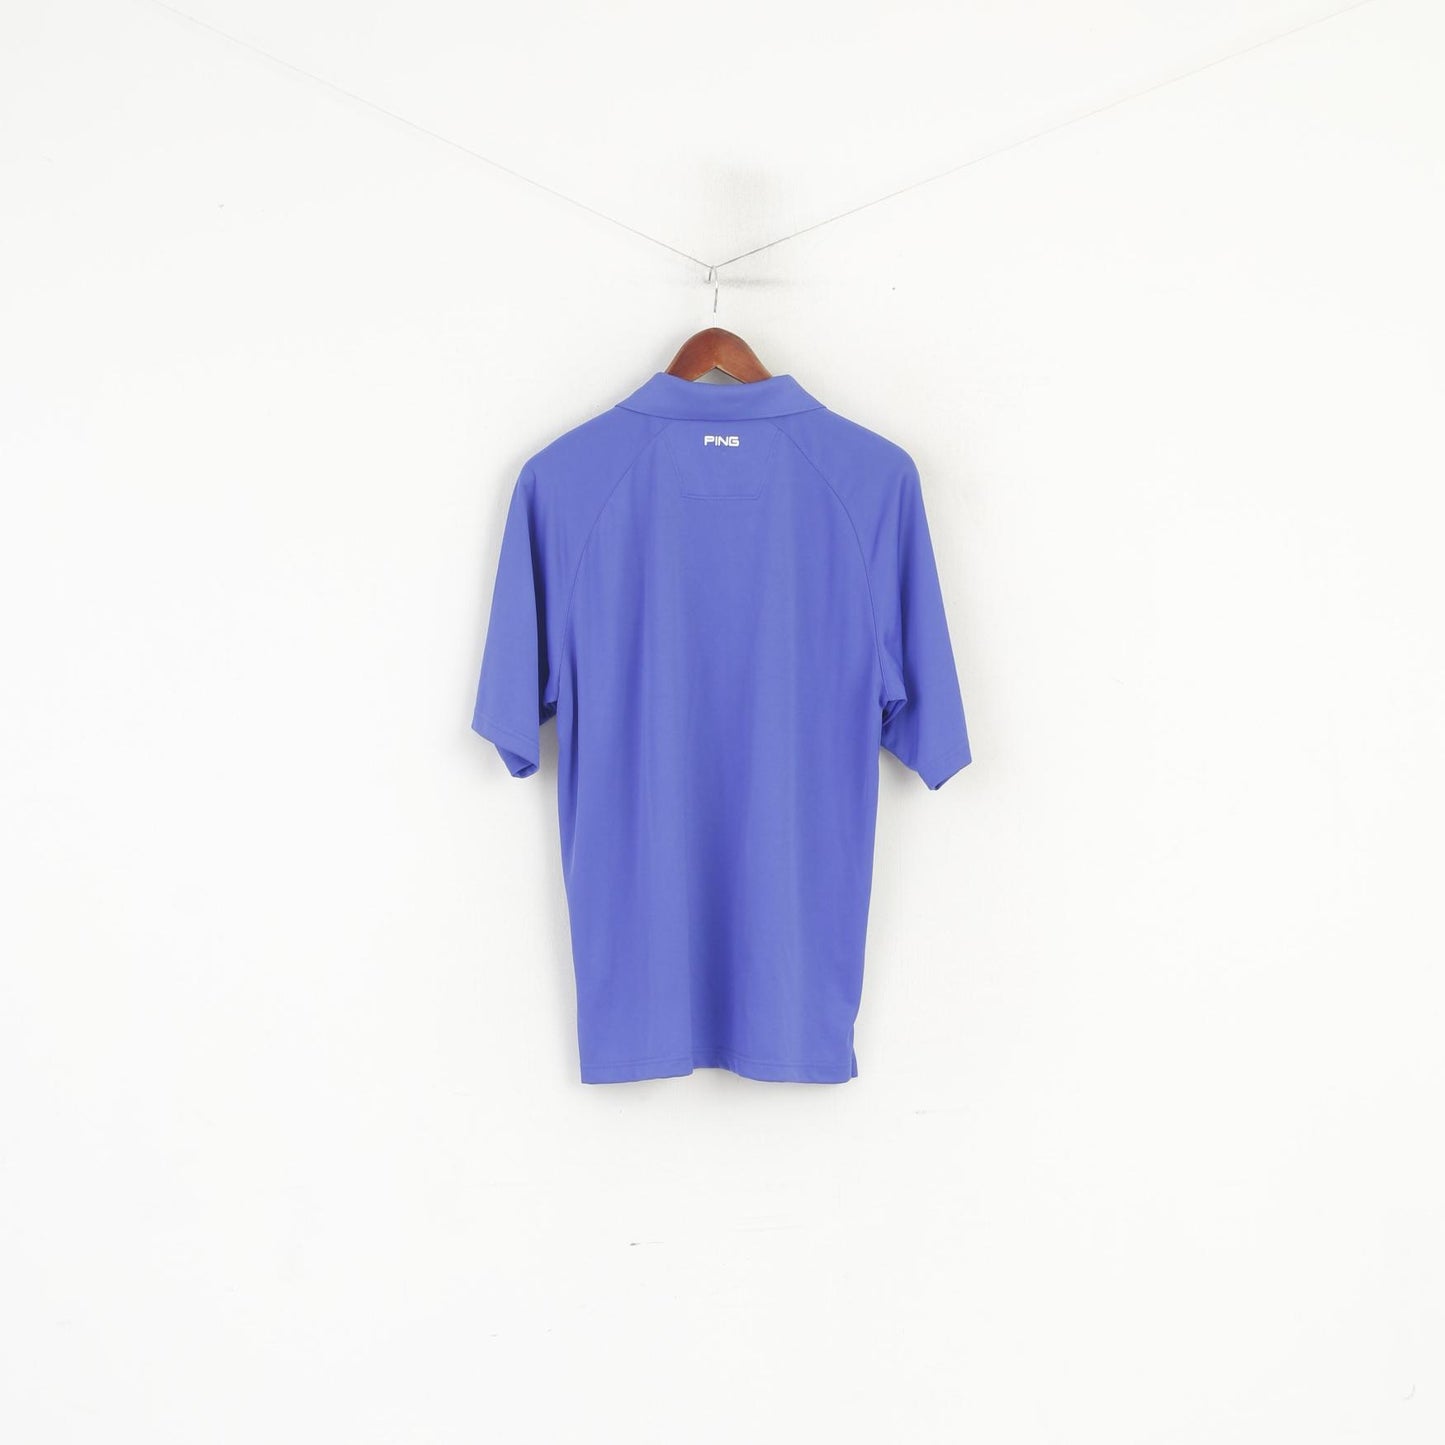 Polo da uomo L della collezione PING blu Golf Sportswear Shiny Classic Fit Top